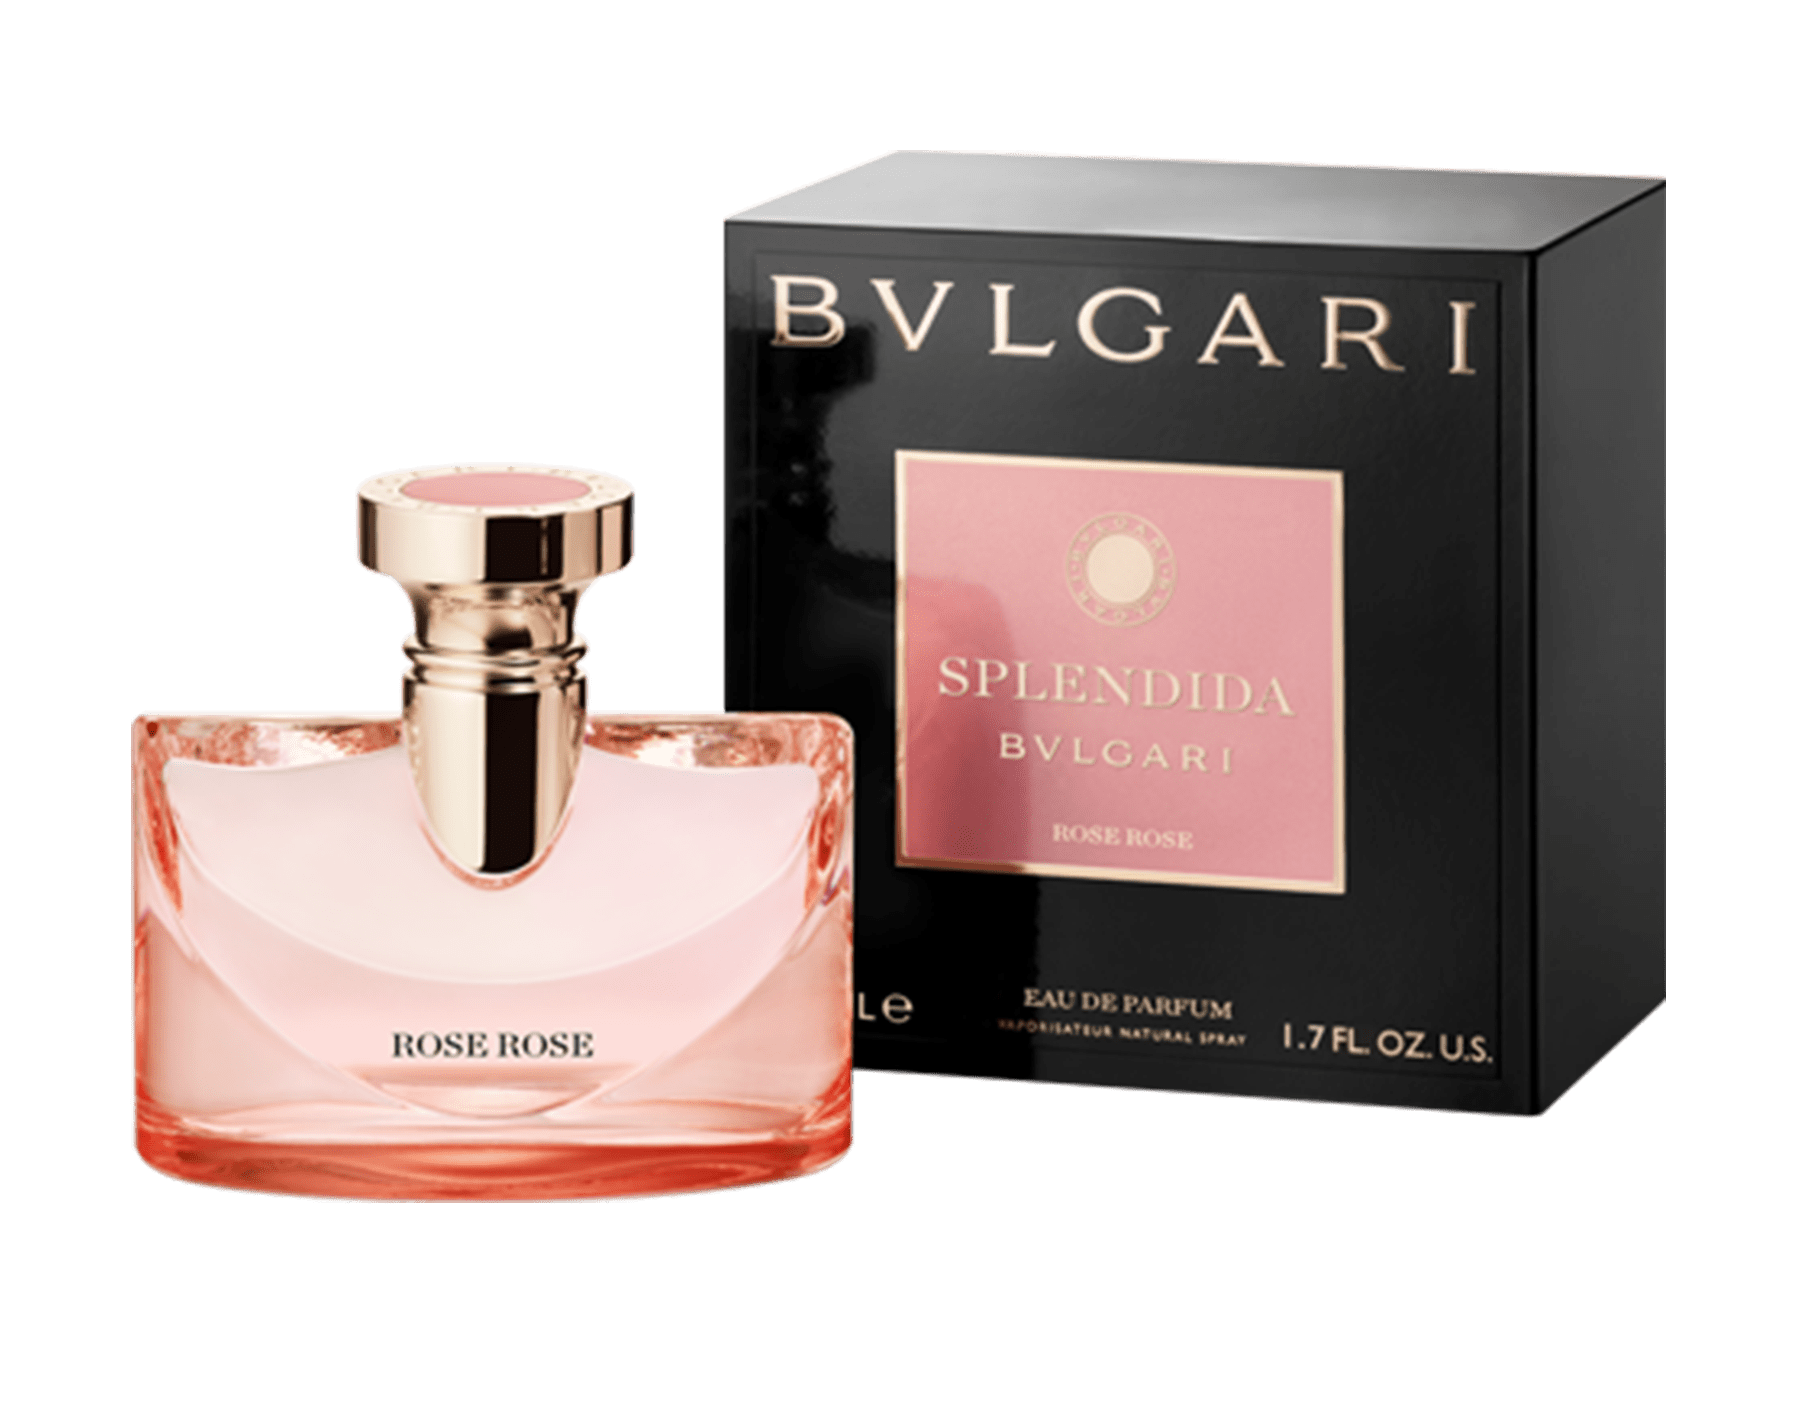 bvlgari perfume 50ml price